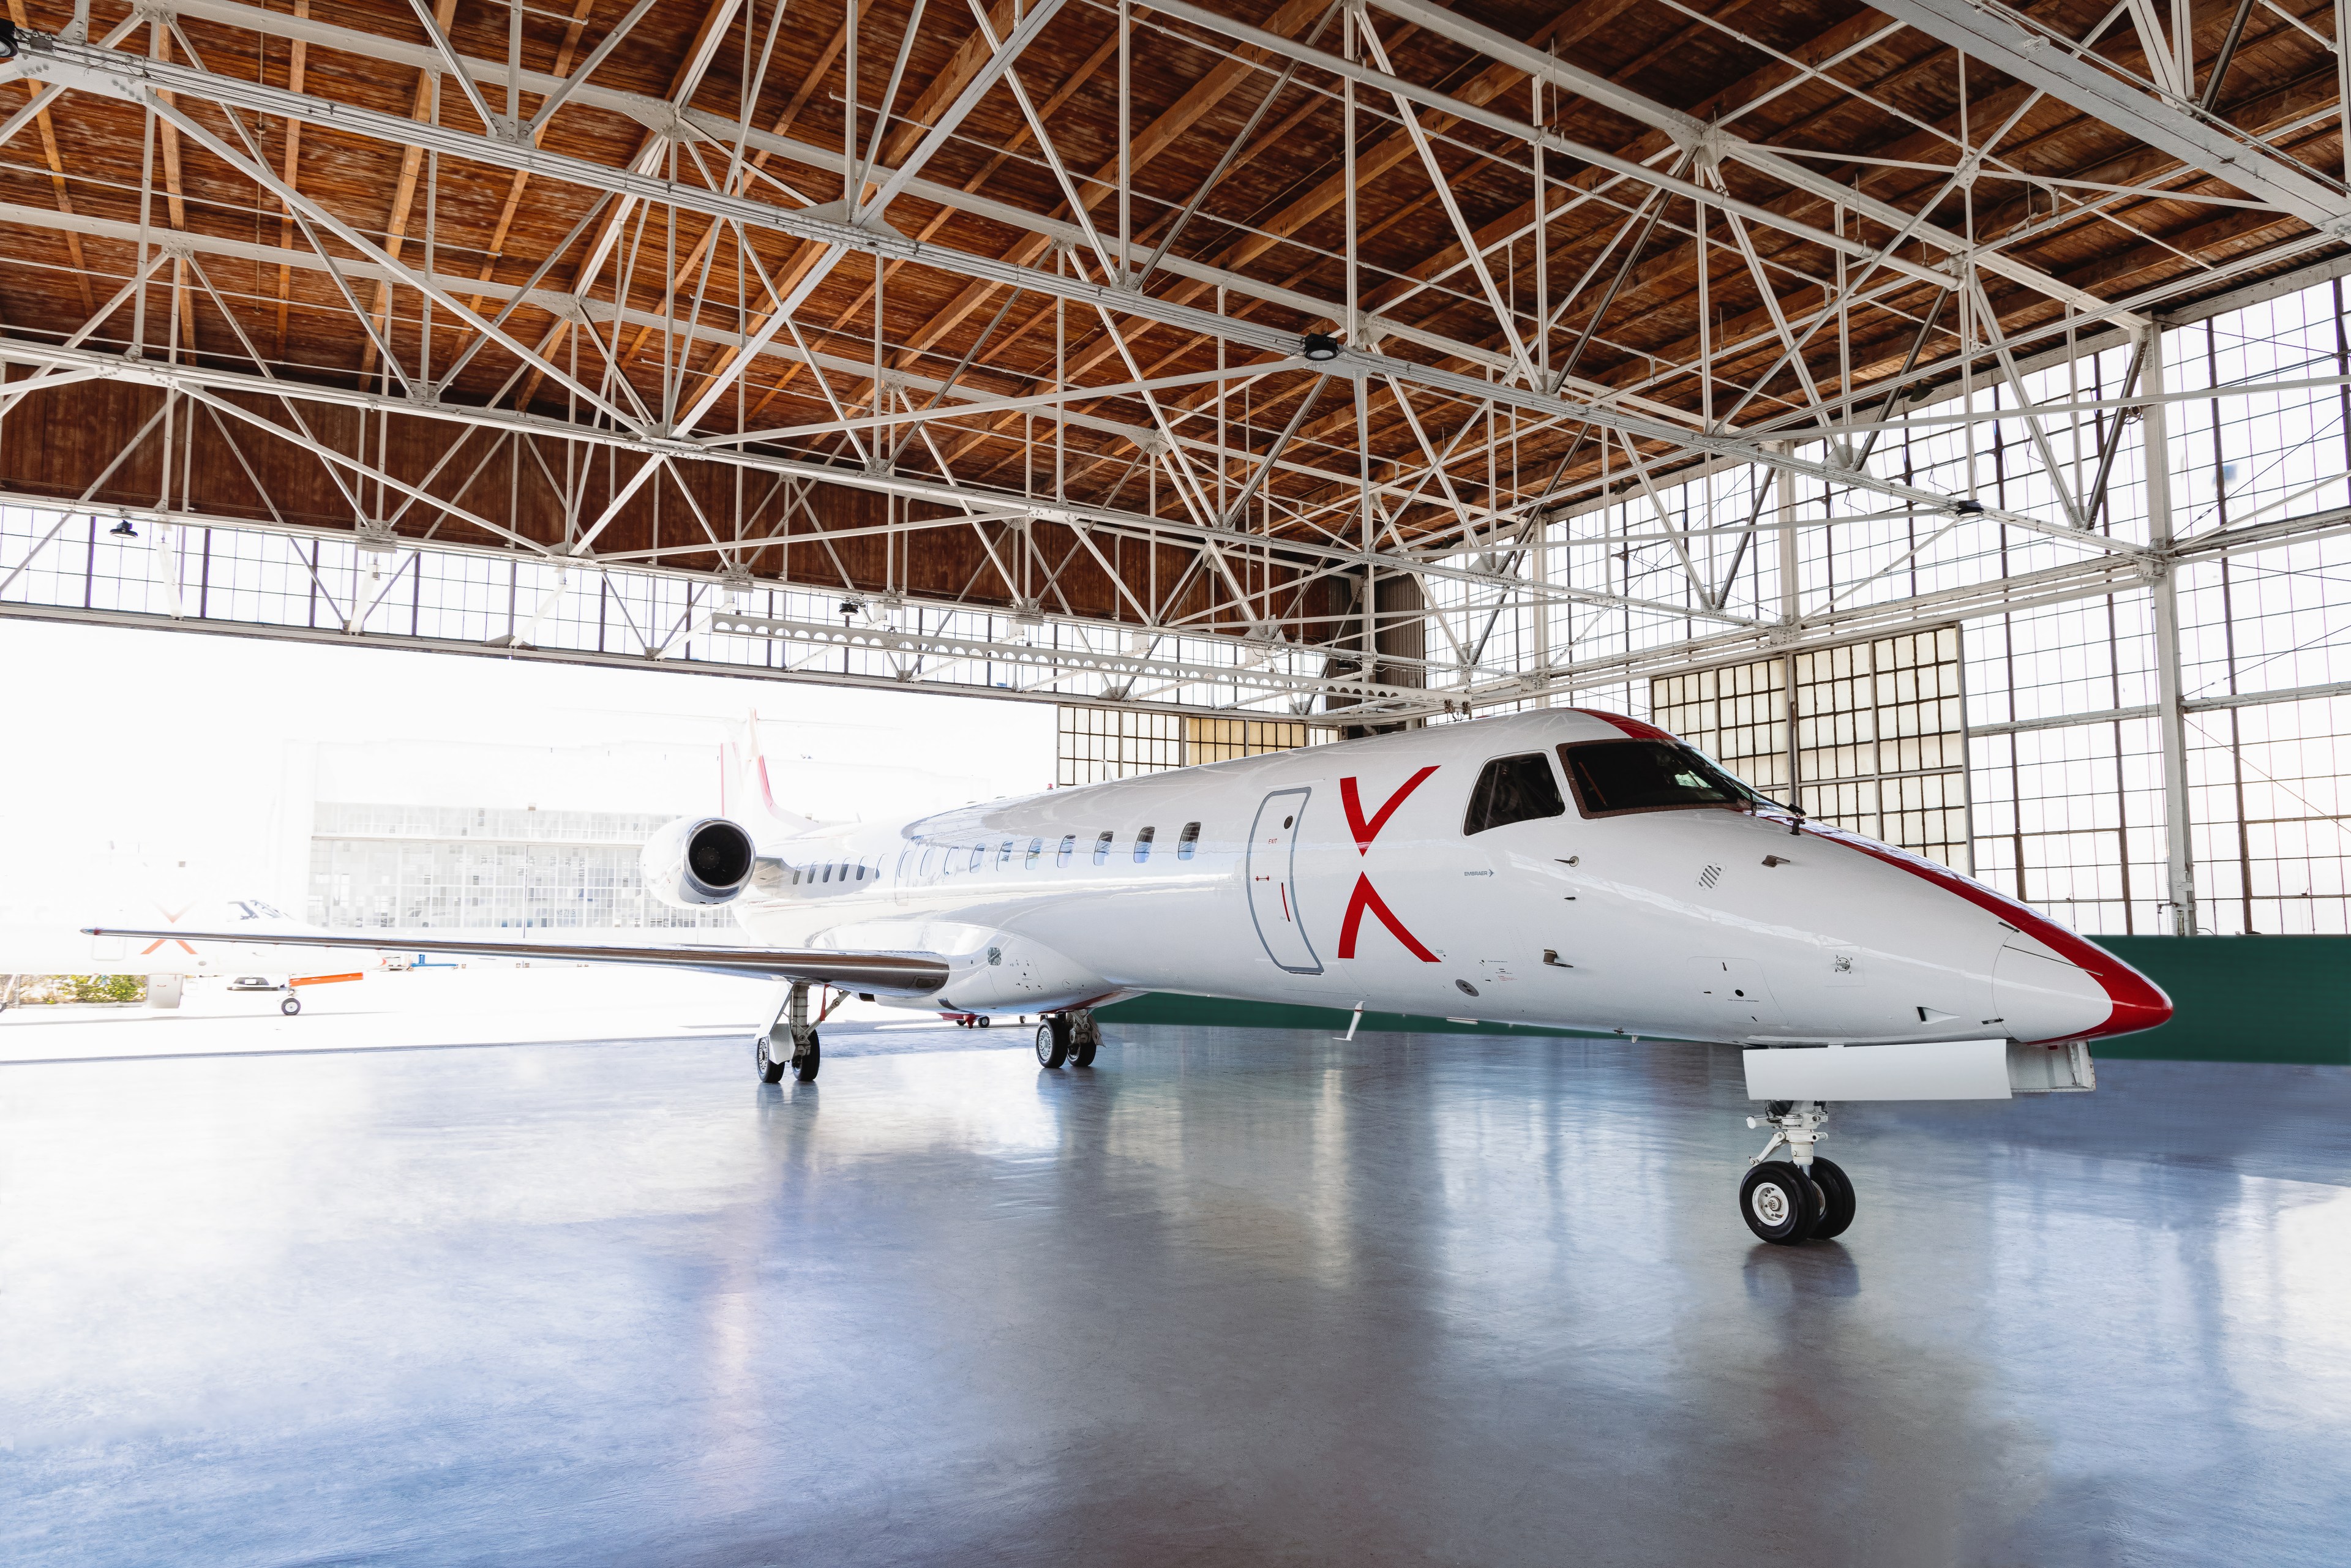 a white semi-private jet waits in a hangar